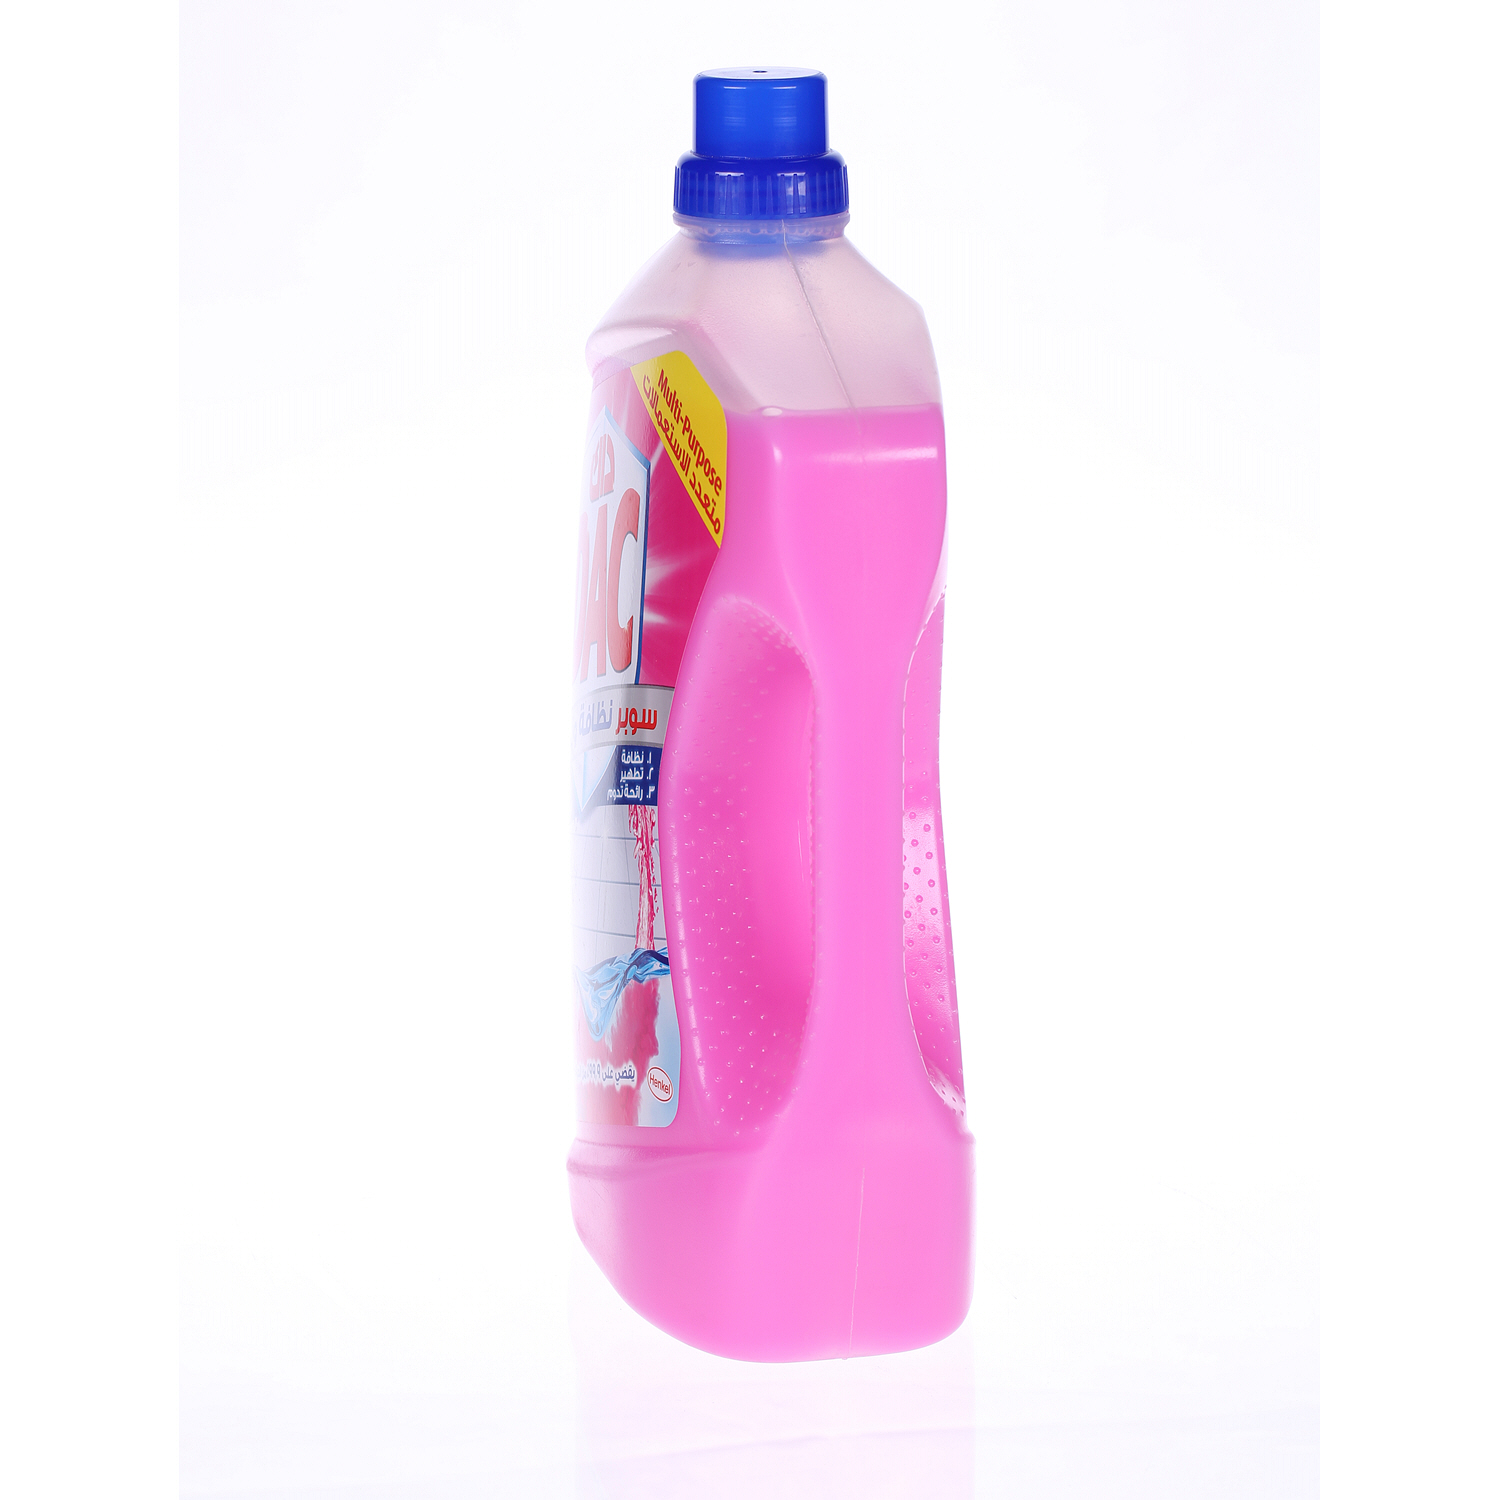 Dac Gold Multi-purpose Disinfectant & Liquid Cleaner Rose 3 L